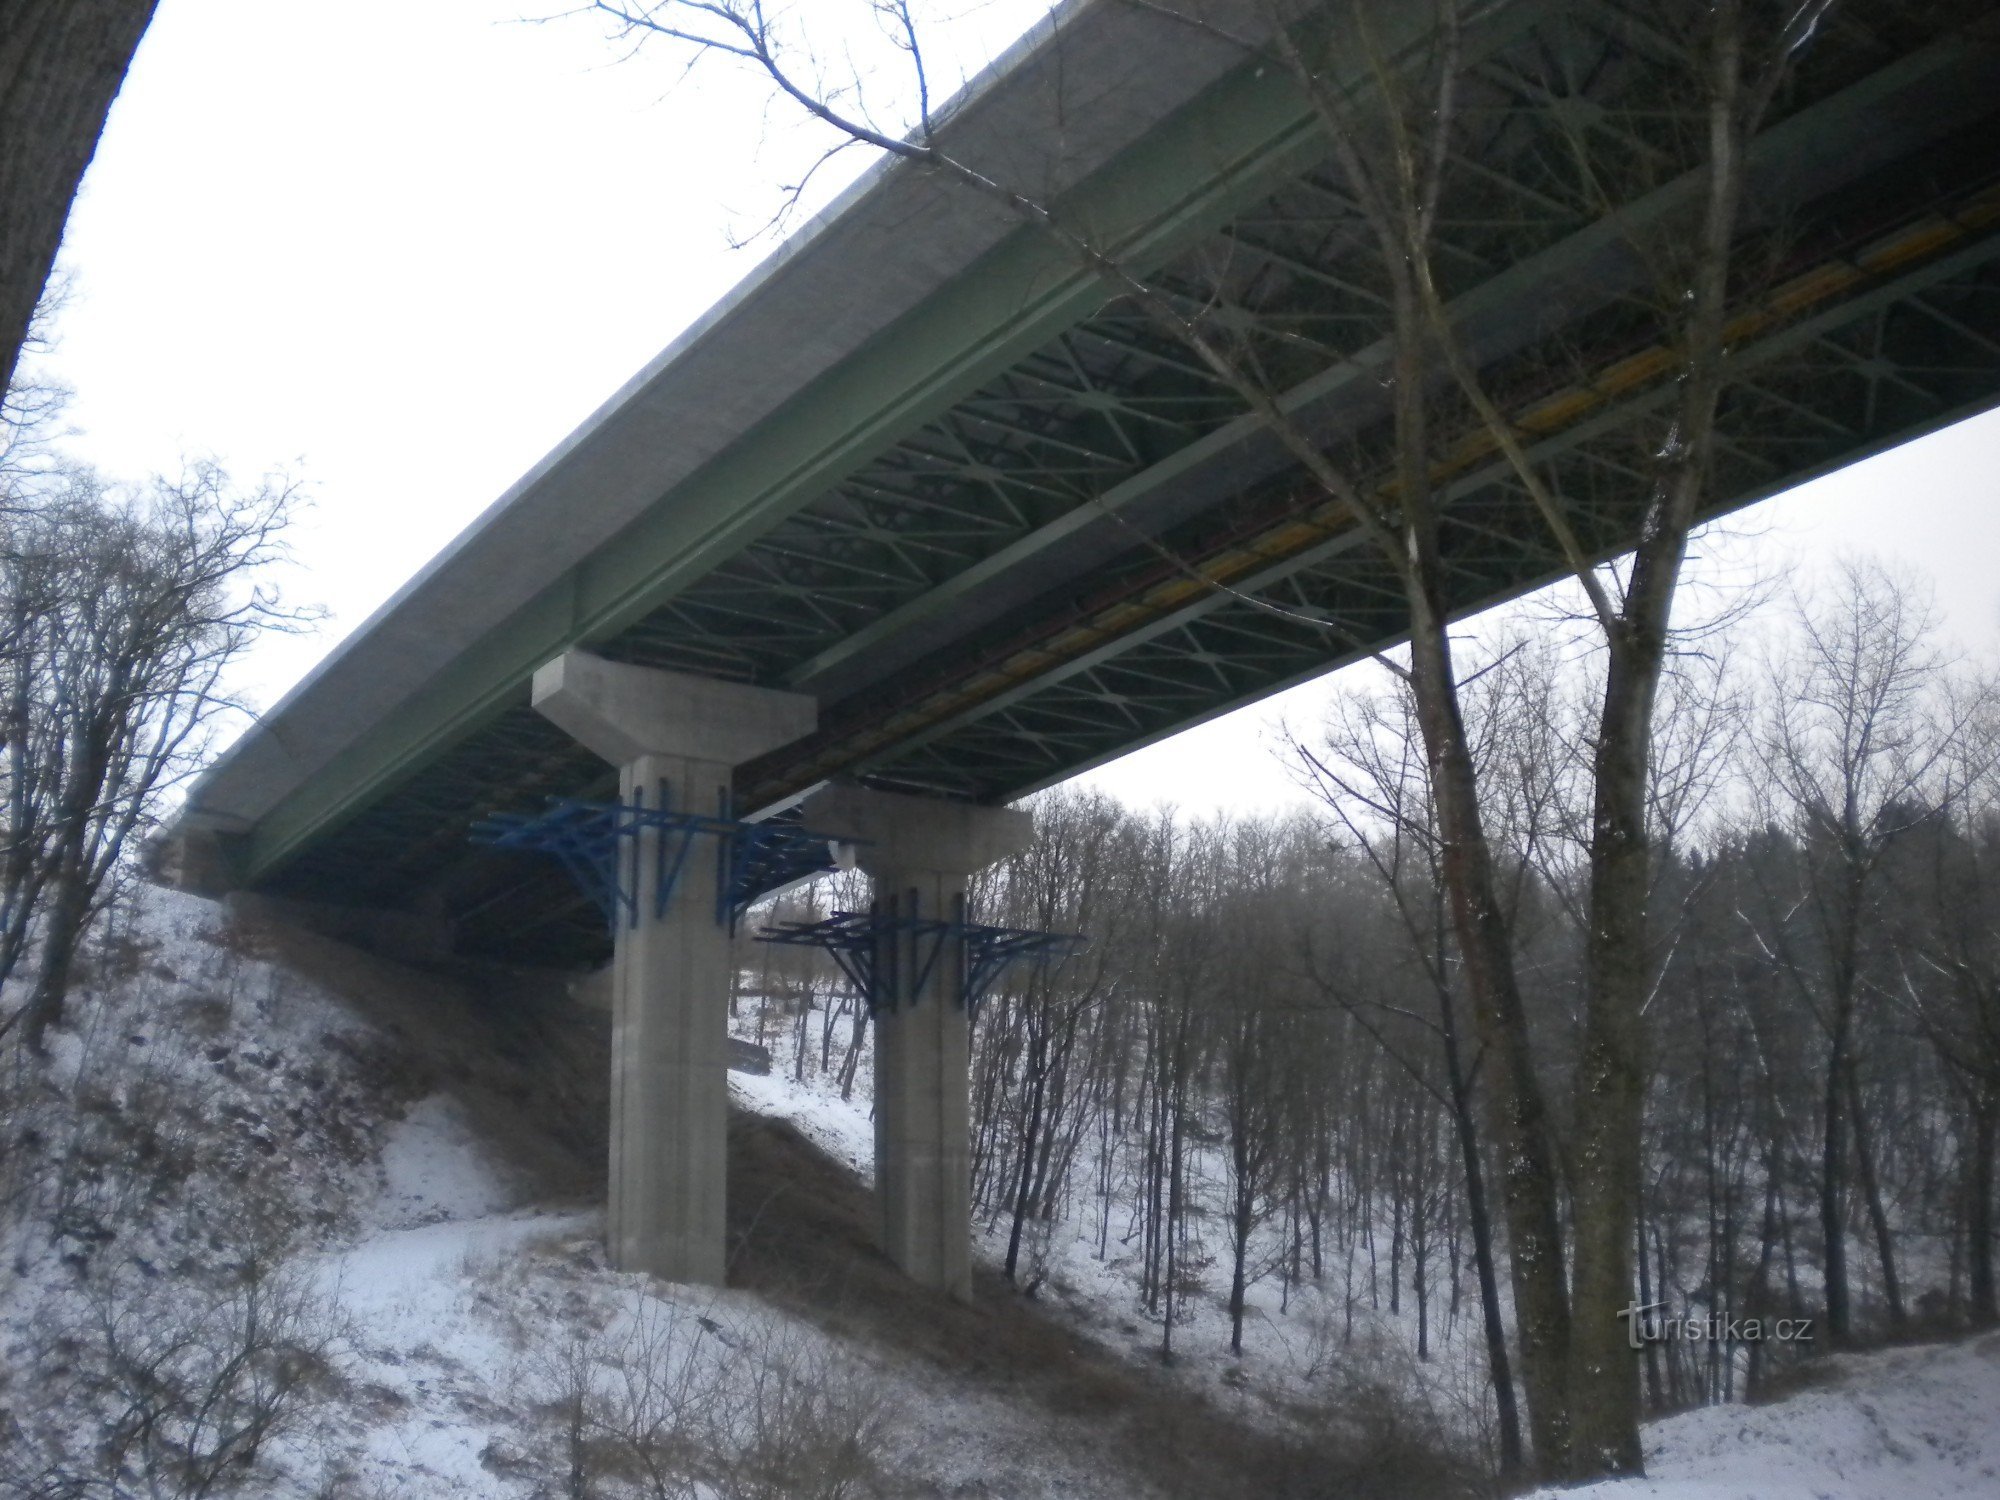 μια μικρή γέφυρα αυτοκινητόδρομου στην κοιλάδα.